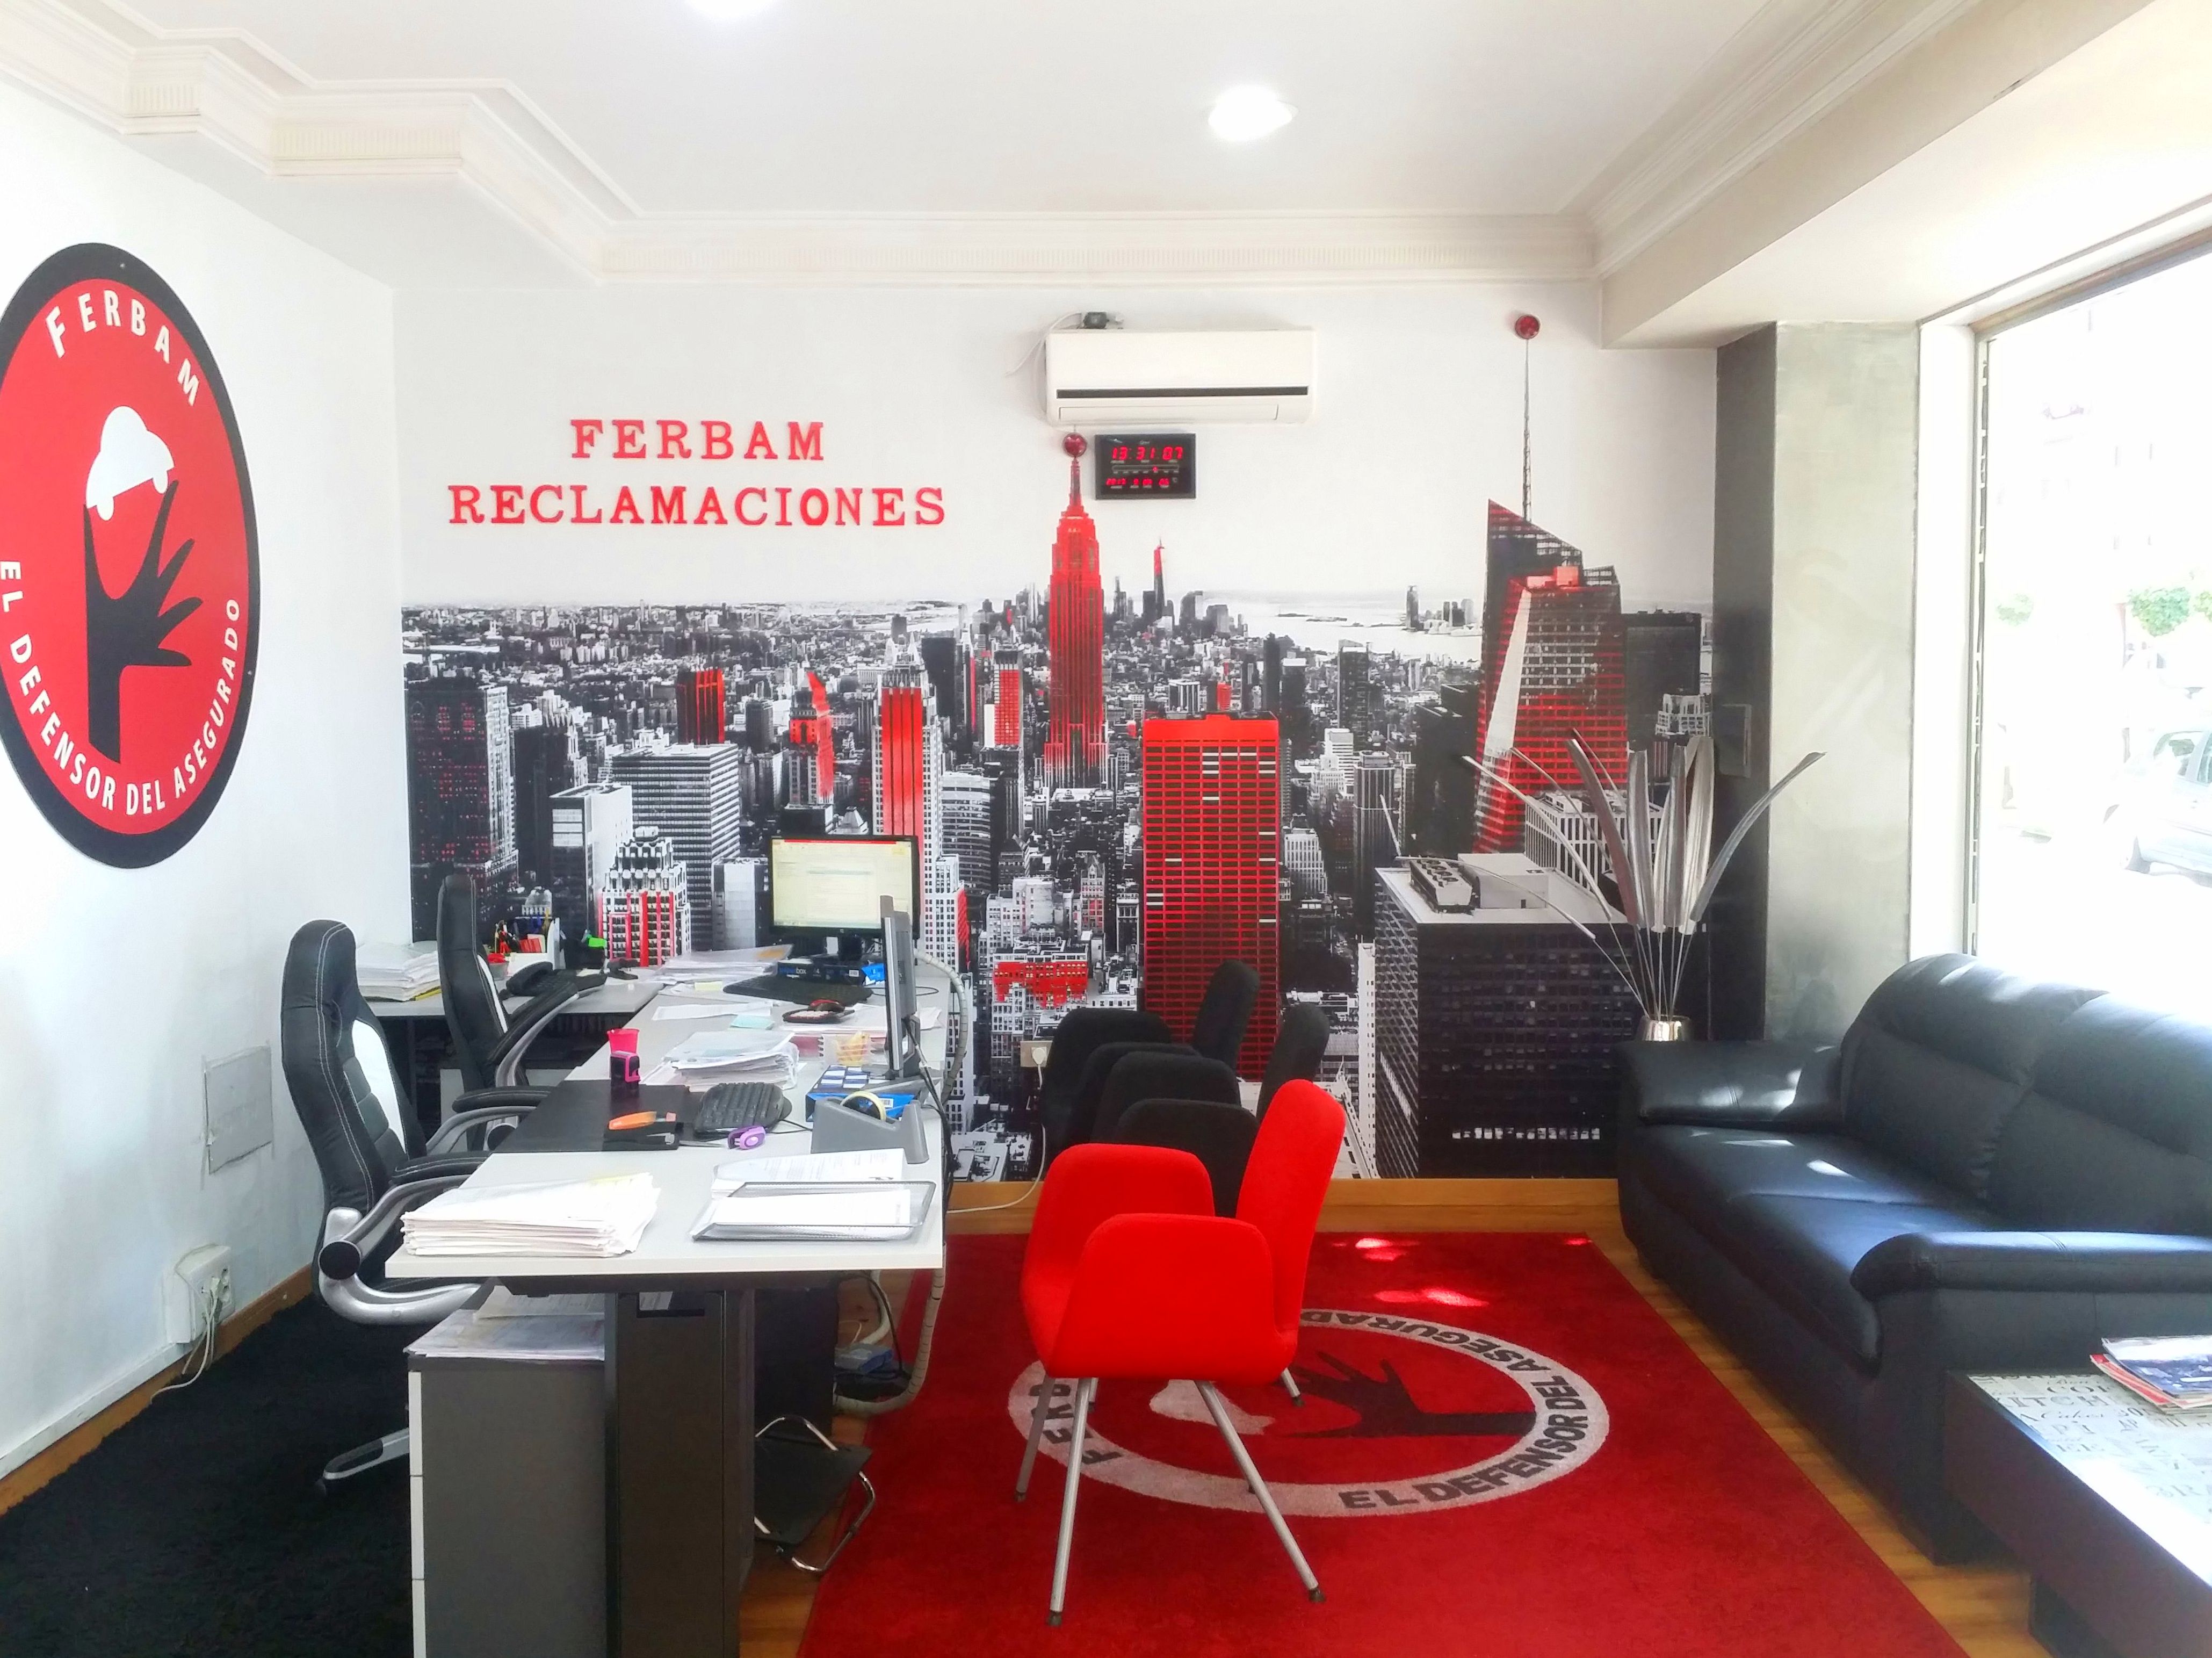 Foto 1 de Despacho de abogados especializado en indemnizaciones y reclamaciones en Vigo | Ferbam Reclamaciones